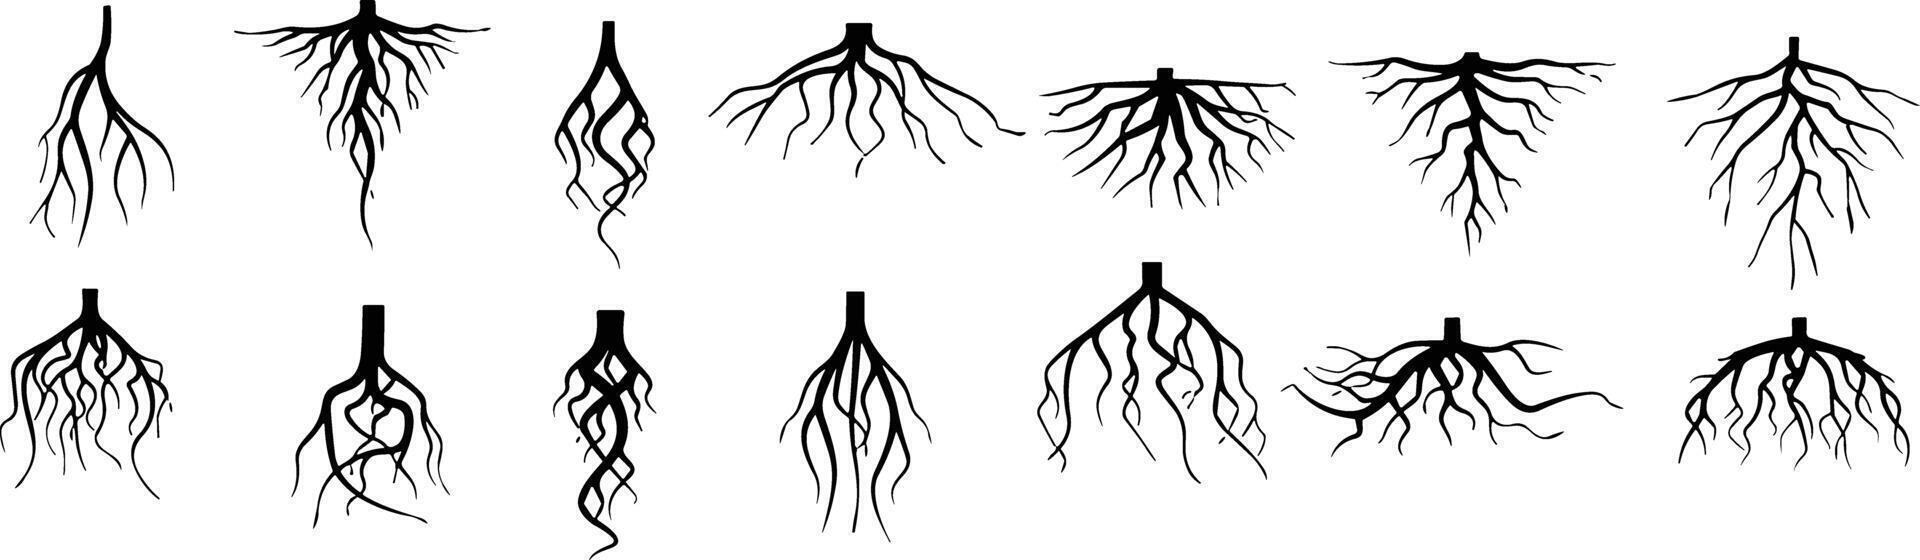 bomen wortels silhouet icoon vector set. penwortel en vezelig wortel systemen van divers planten, realistisch zwart wortels illustraties.